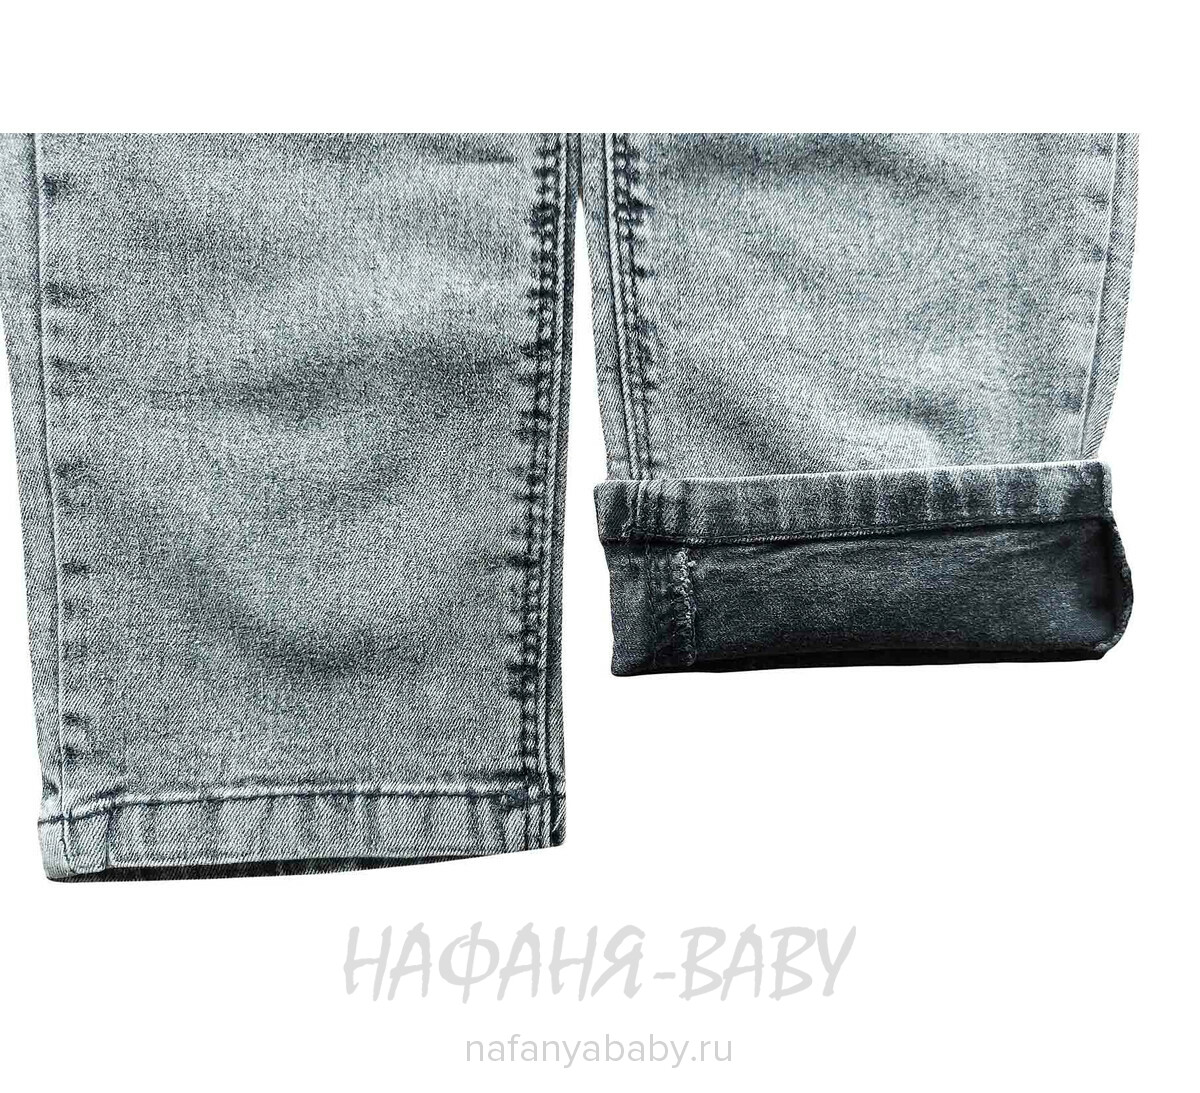 Джинсы подростковые ELEYSA Jeans арт: 61422, 13-16 лет, цвет черный, оптом Турция